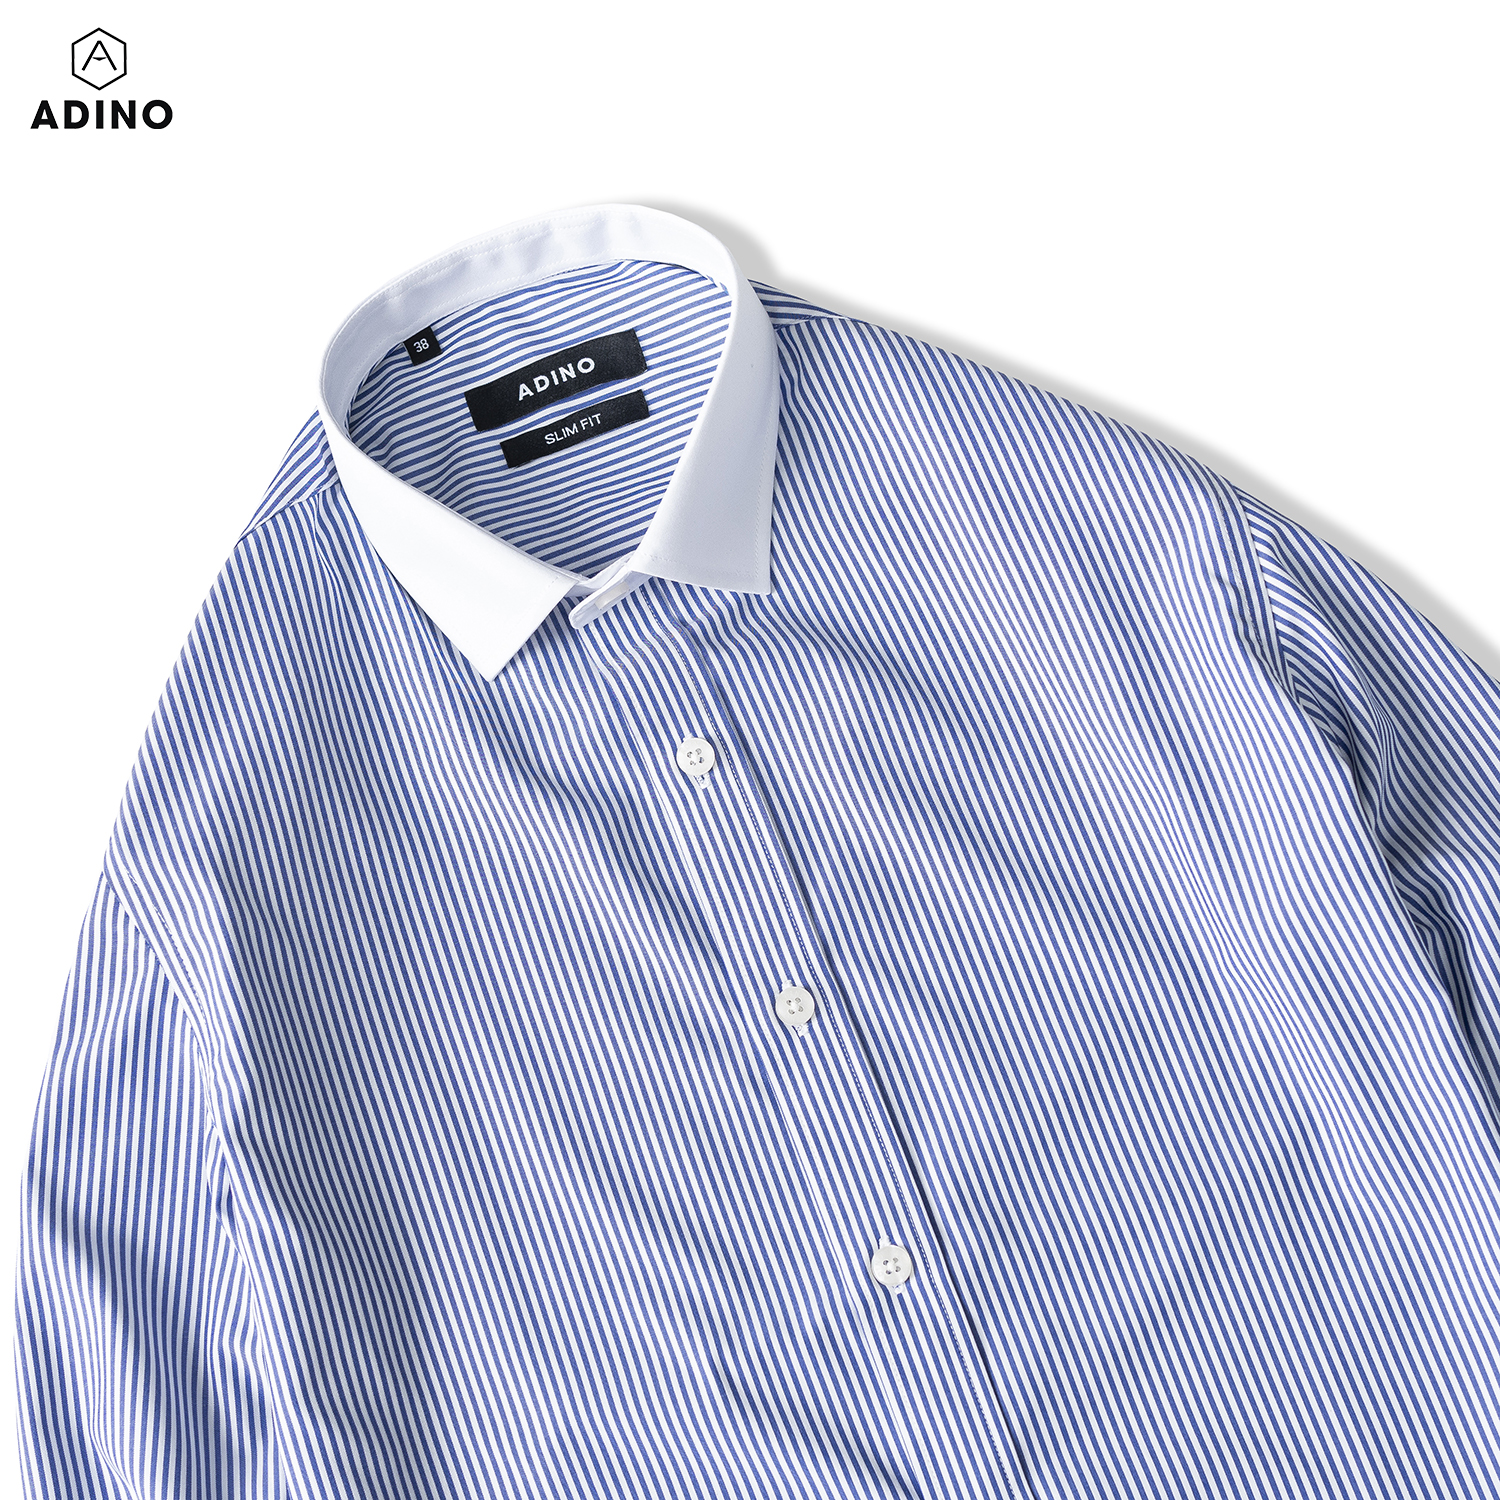 Hình ảnh Áo sơ mi nam kẻ sọc xanh ADINO vải sợi sồi modal polyester mềm mịn mát dáng slimfit công sở trẻ trung SM11